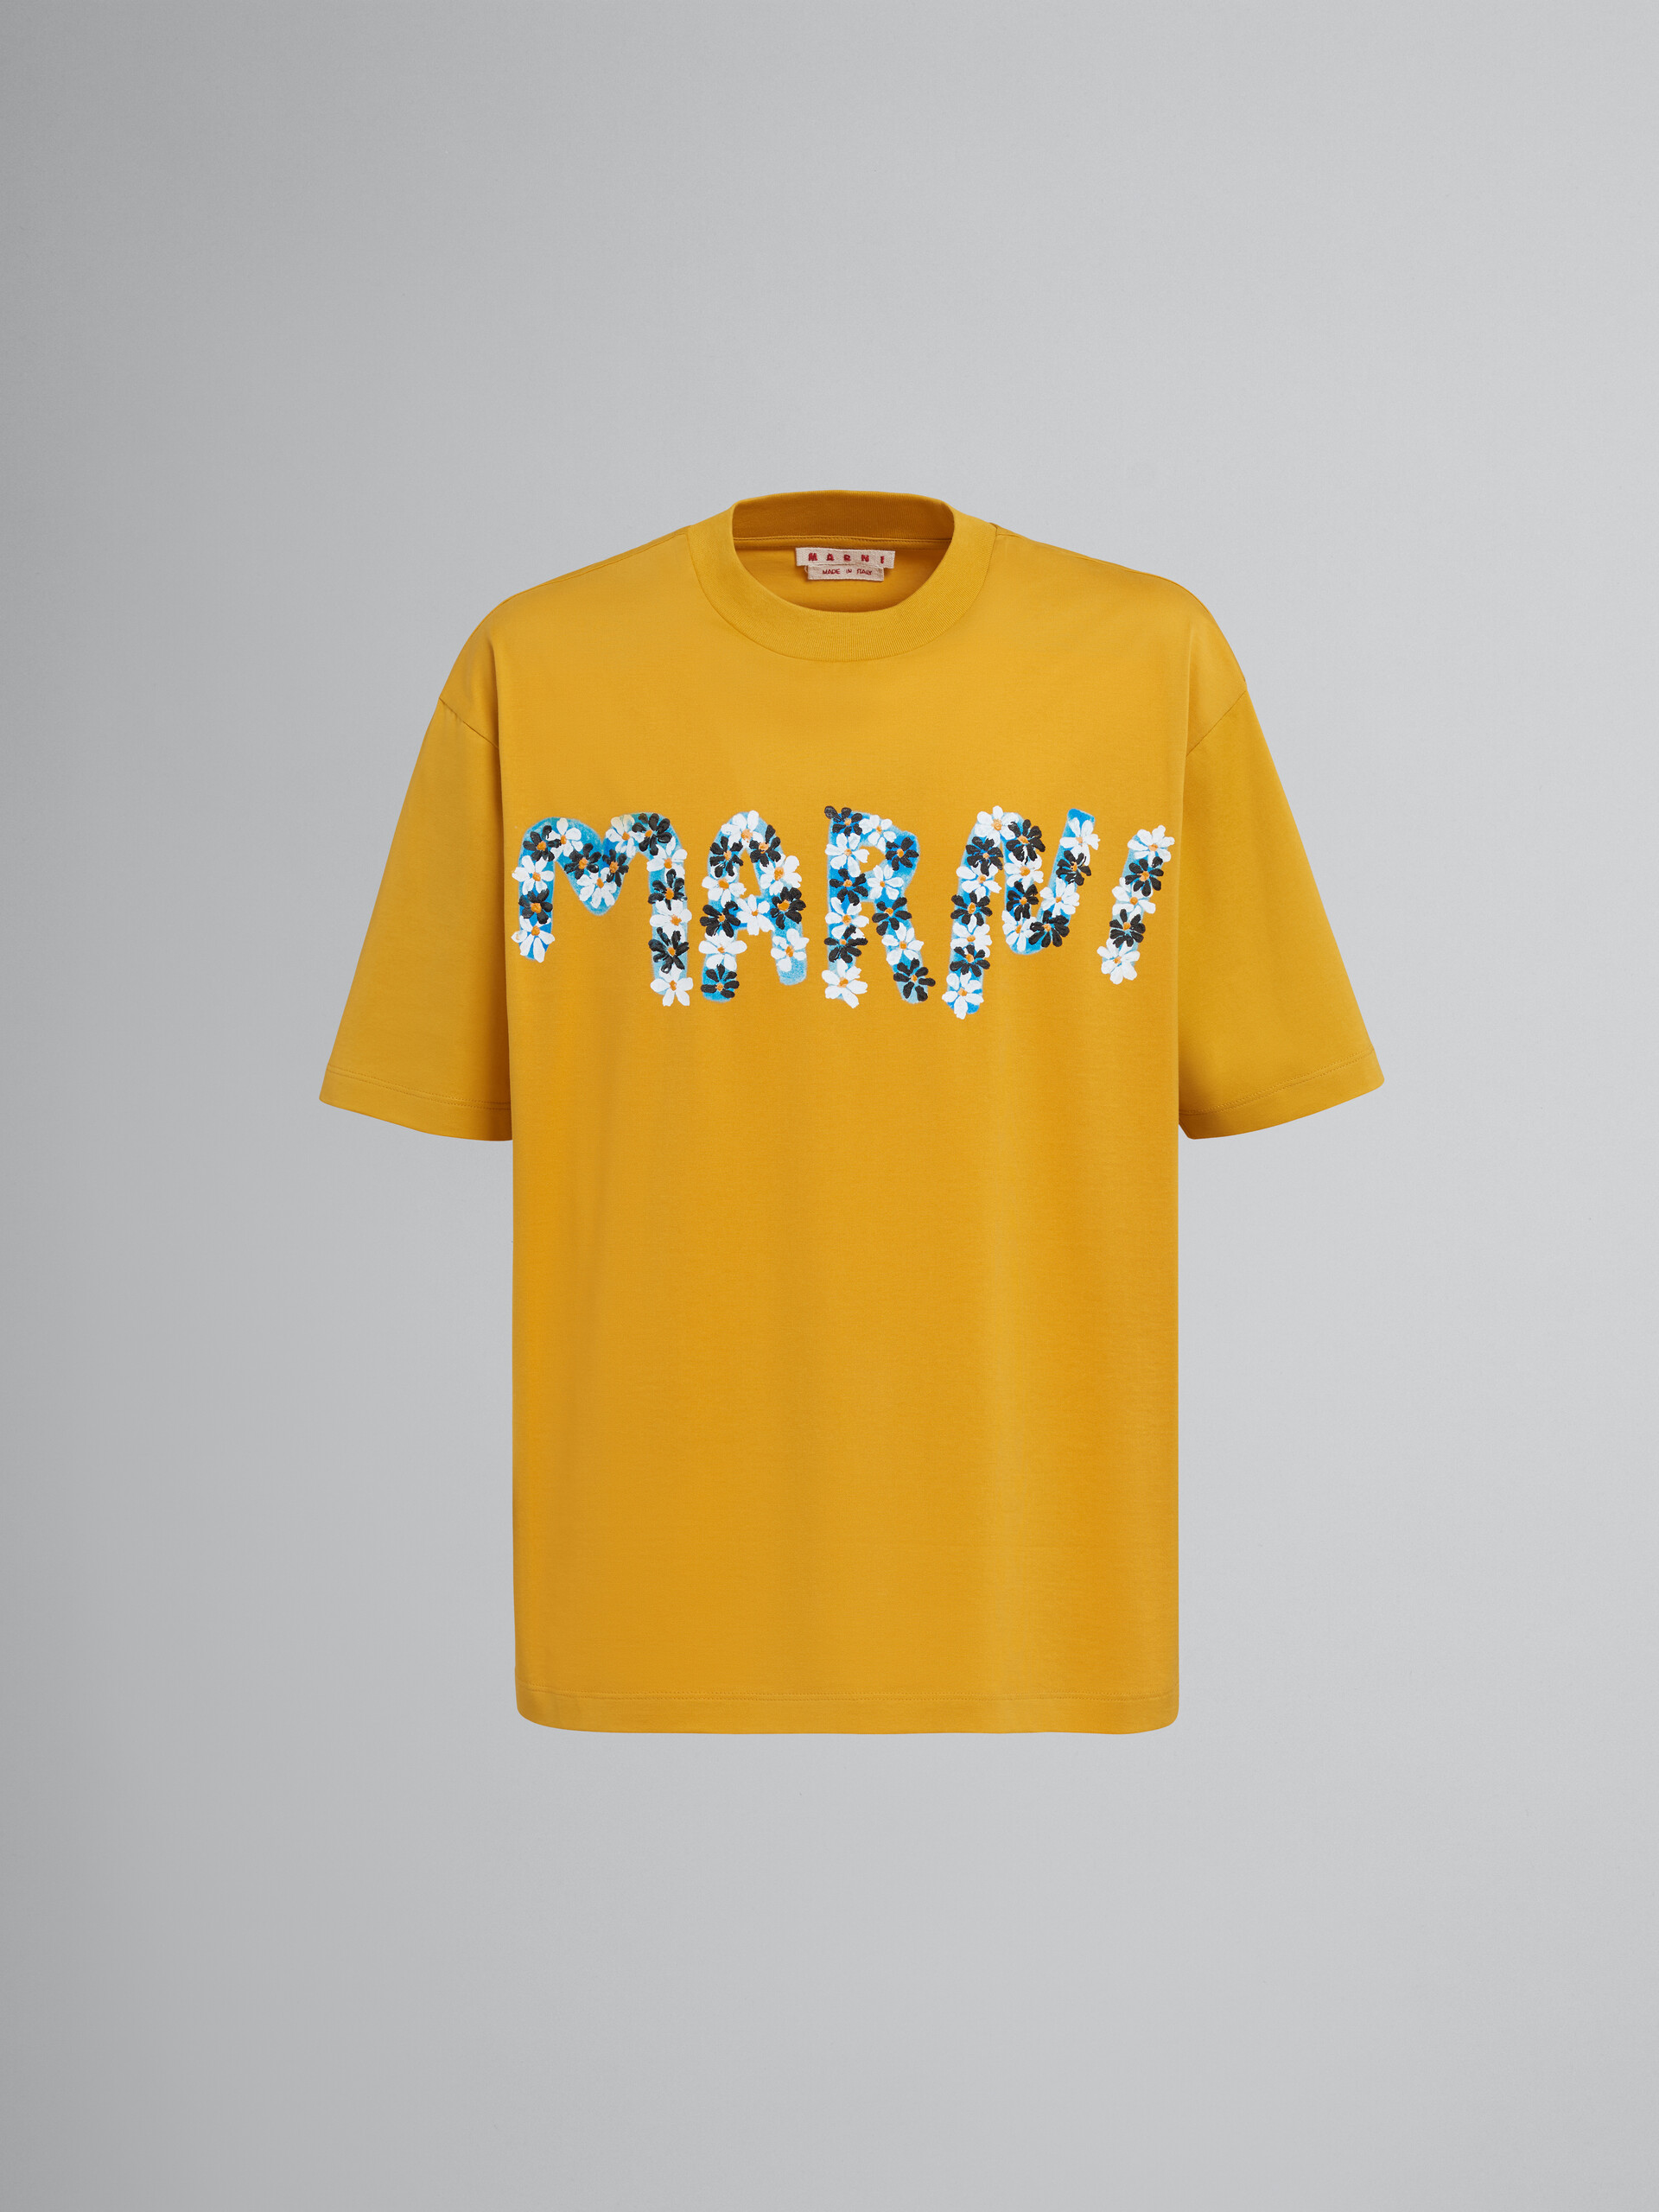 Daisy logo print yellow jersey T-shirt - T-shirts - Image 1